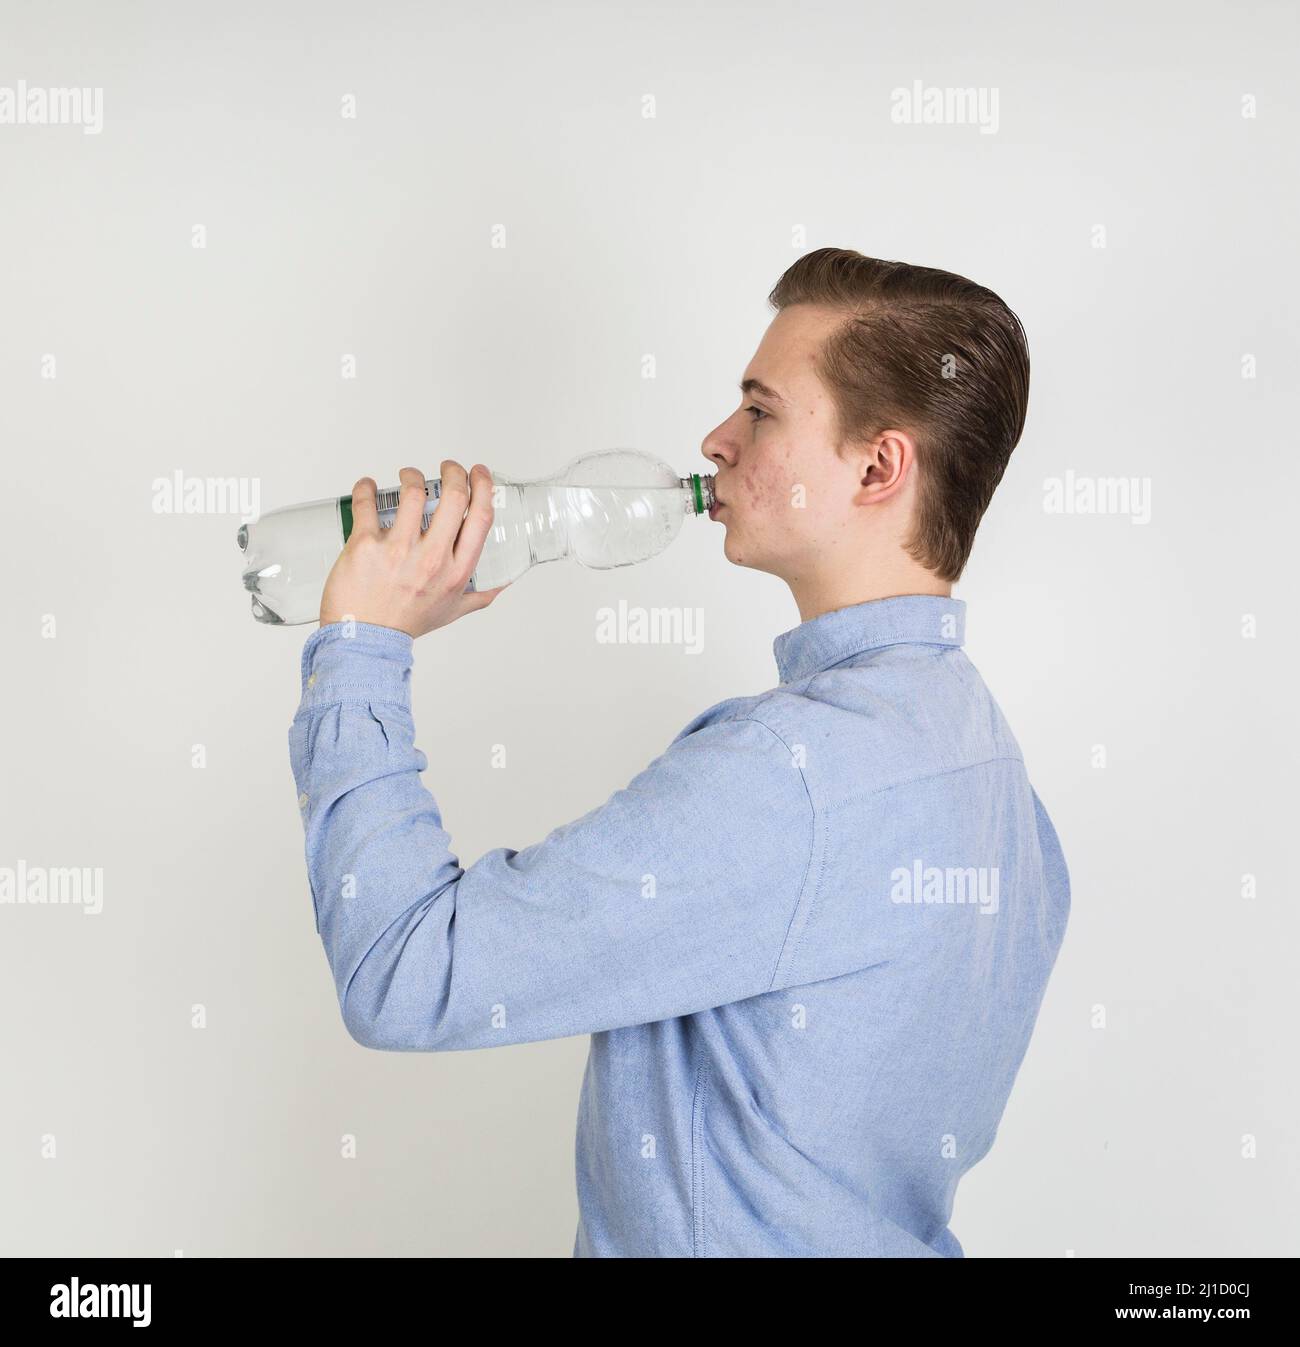 https://c8.alamy.com/comp/2J1D0CJ/cute-boy-drinks-water-out-of-a-bottle-2J1D0CJ.jpg